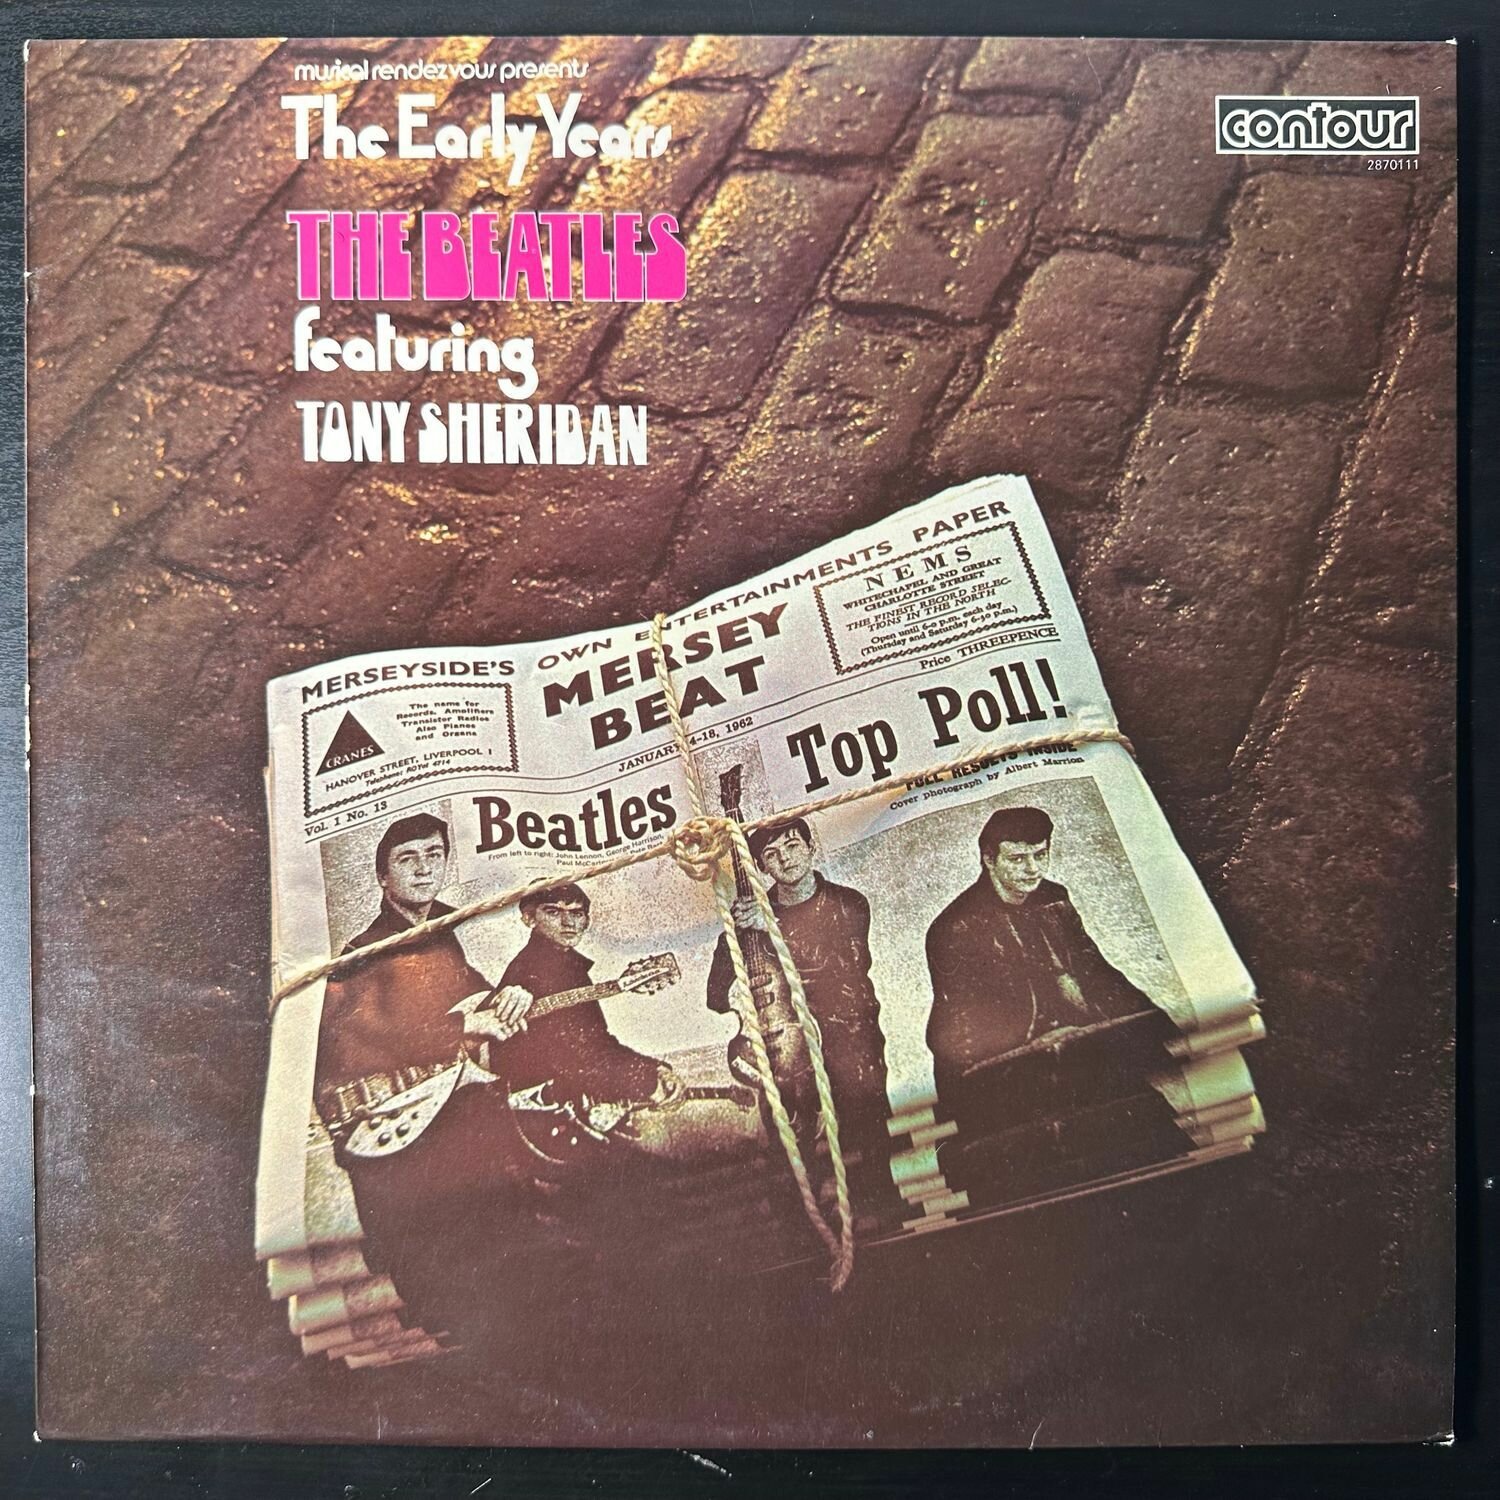 Виниловая пластинка The Beatles Featuring Tony Sheridan The Early Years (Англия 1971г.)